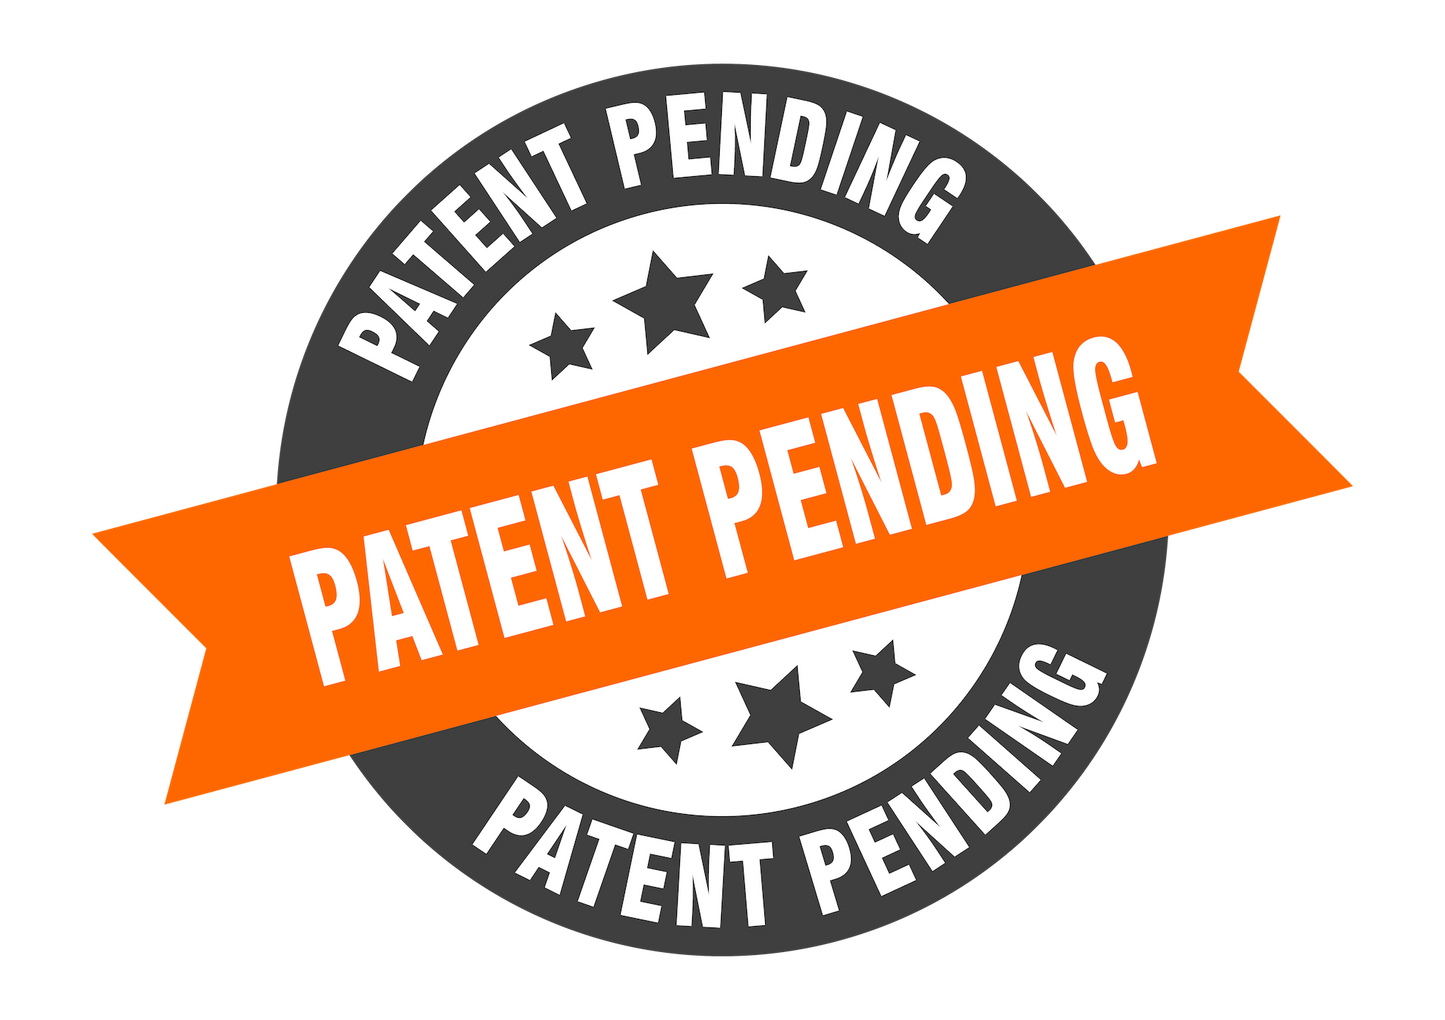 patent pending icon